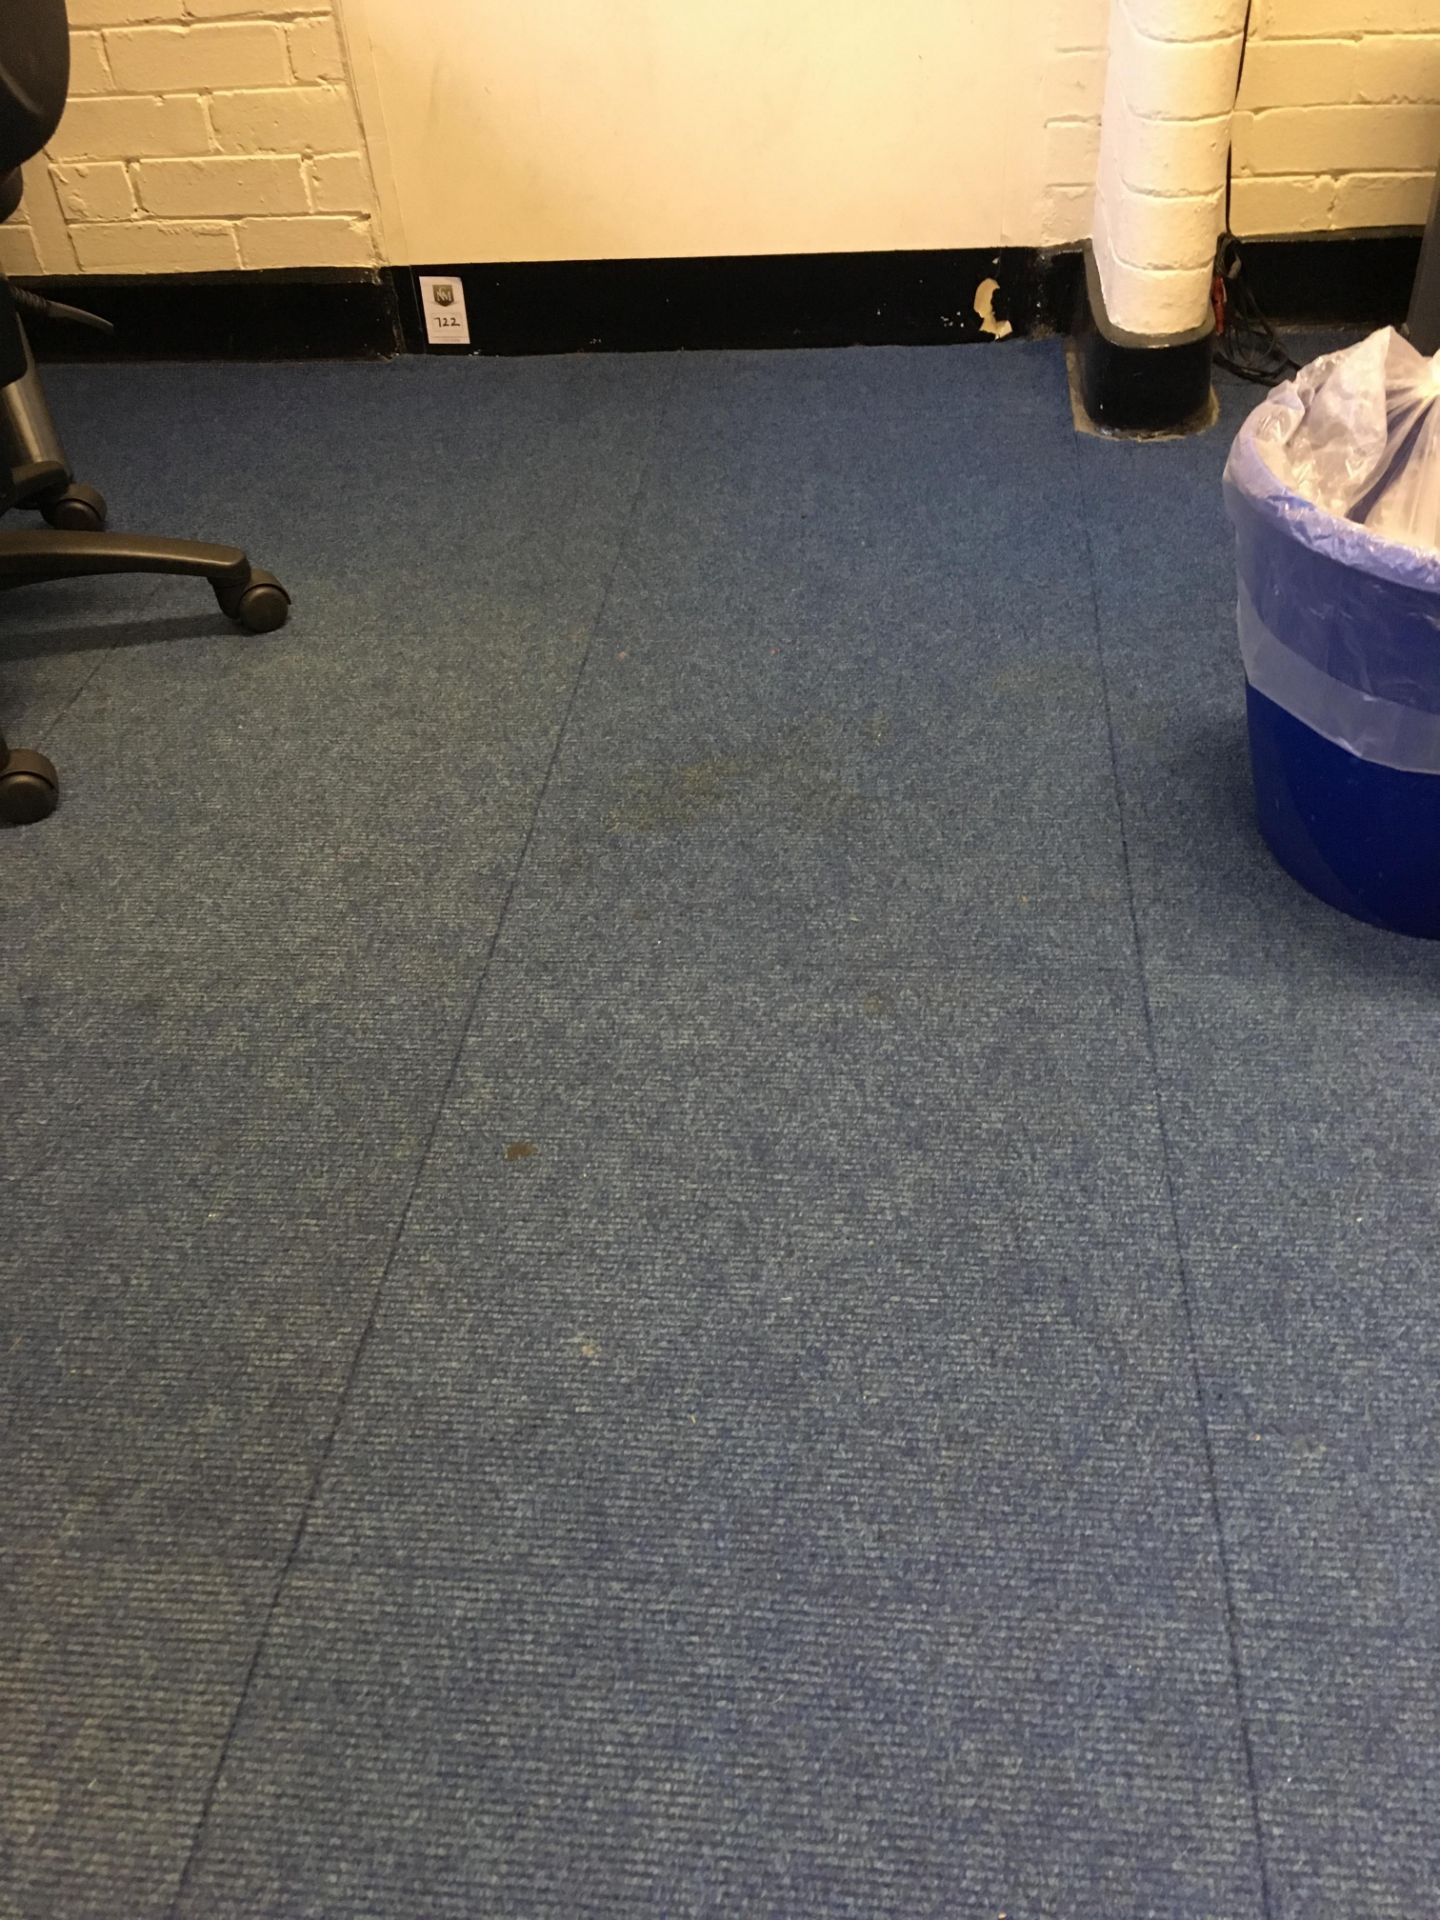 Carpet tiles, blue, 25m2 approx.